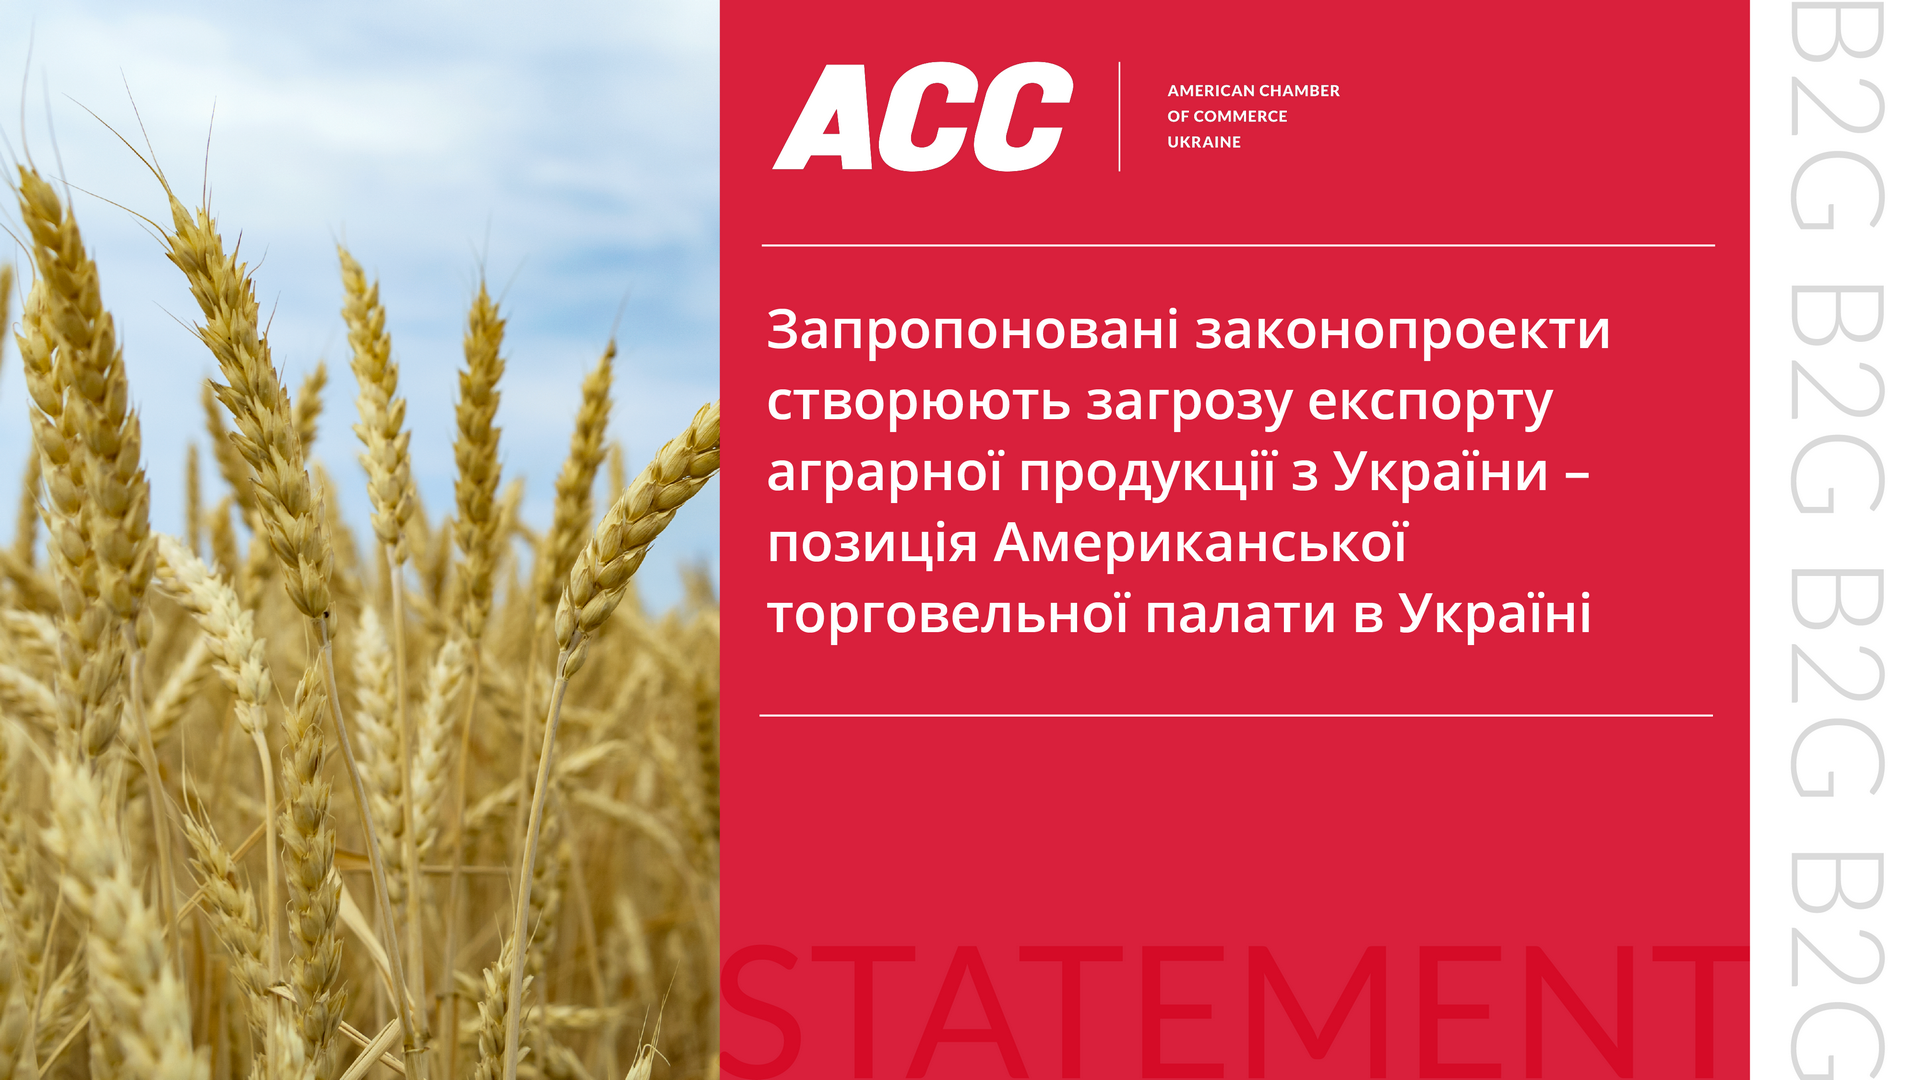 Запропоновані законопроекти створюють загрозу експорту аграрної продукції з України – позиція Американської торговельної палати в Україні